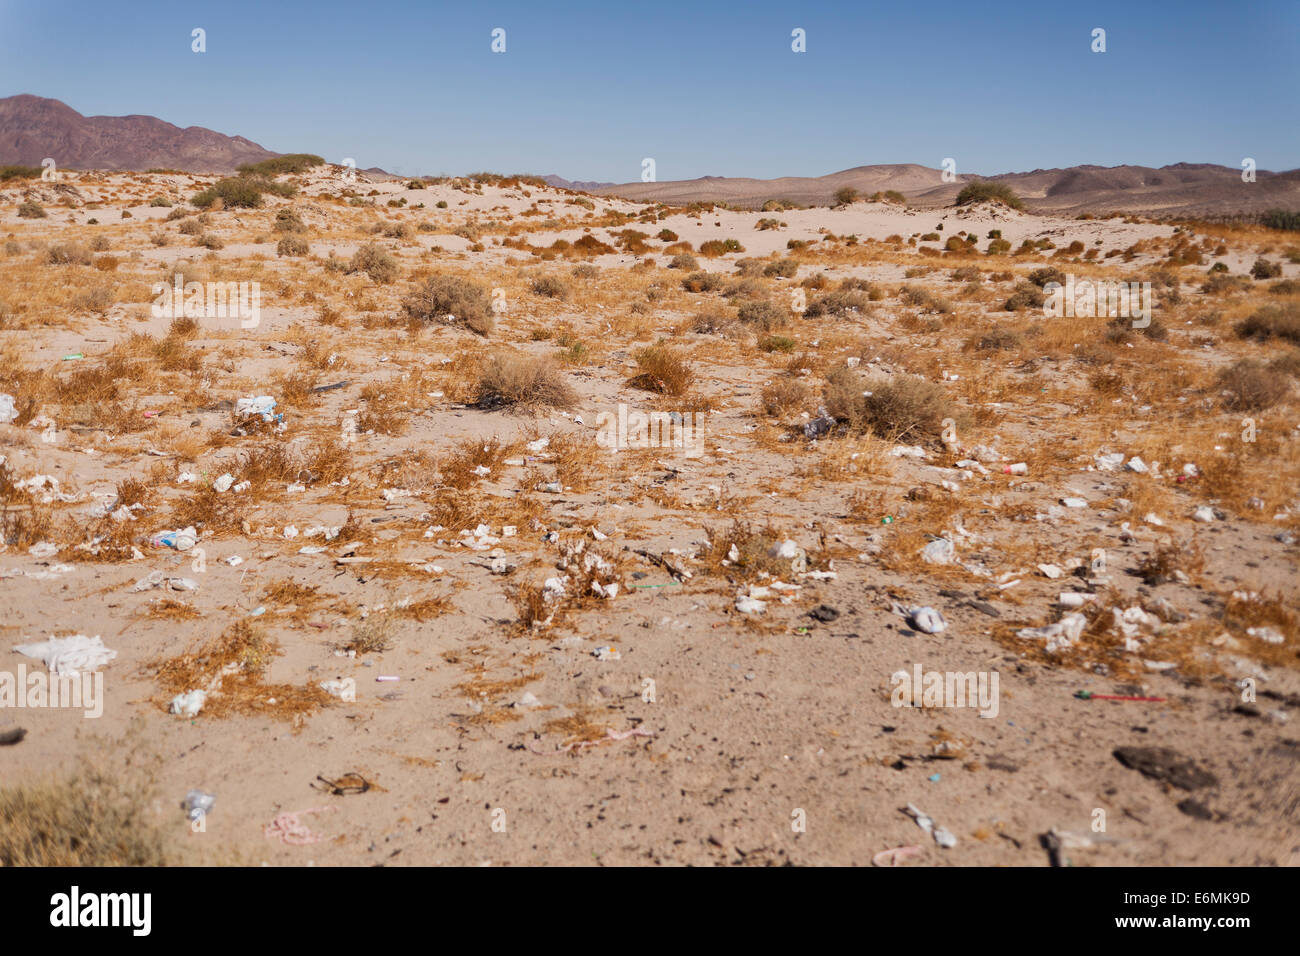 Cucciolata lungo il sud-ovest americano desert highway - Deserto Mojave, California USA Foto Stock